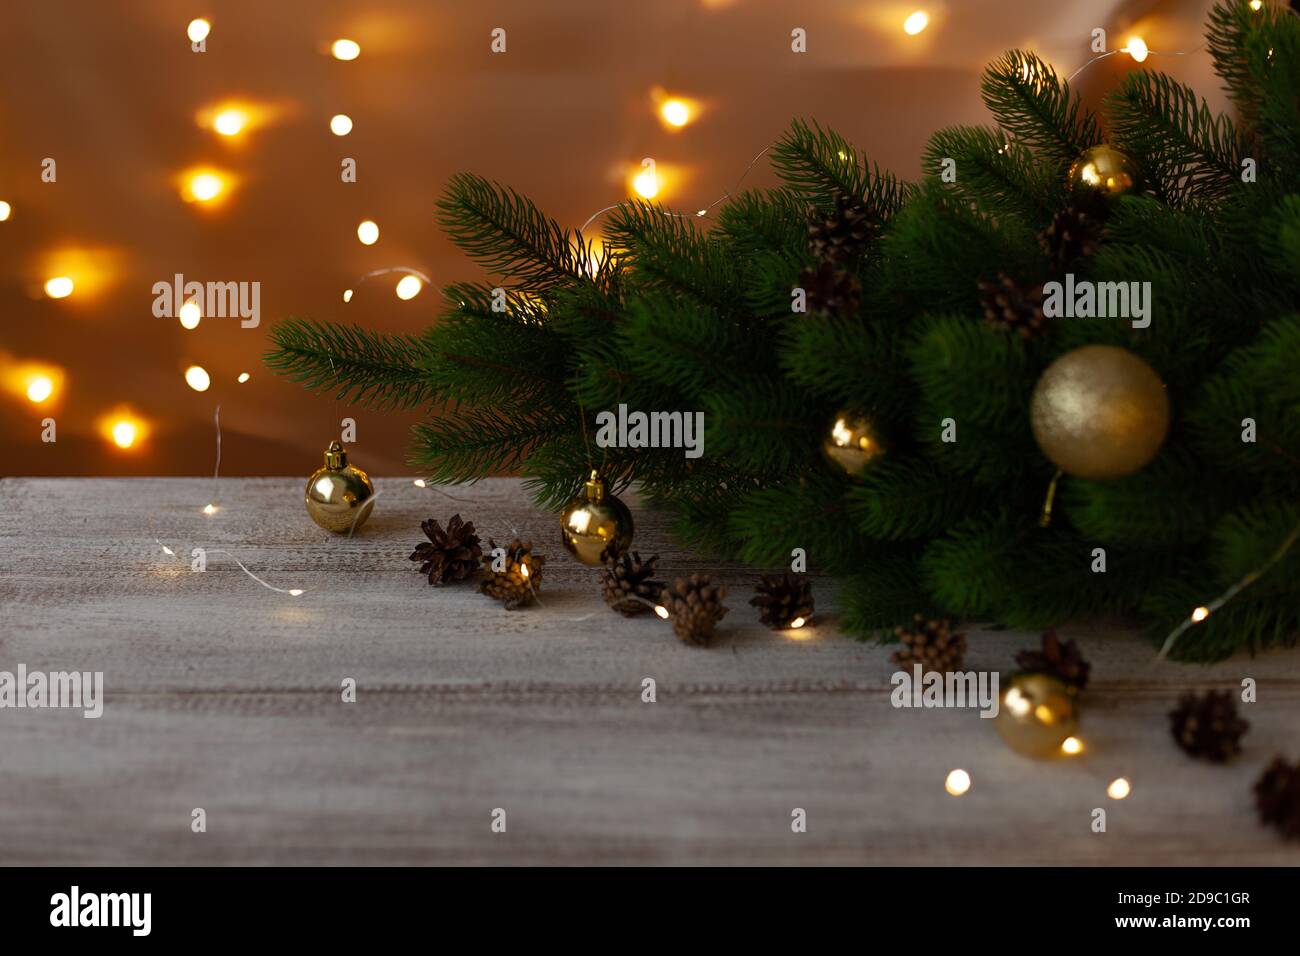 Weihnachtsbaum mit goldenen Kugeln auf einem Holztisch geschmückt In weißer Farbe im Schein von warmen hellen Girlanden Stockfoto